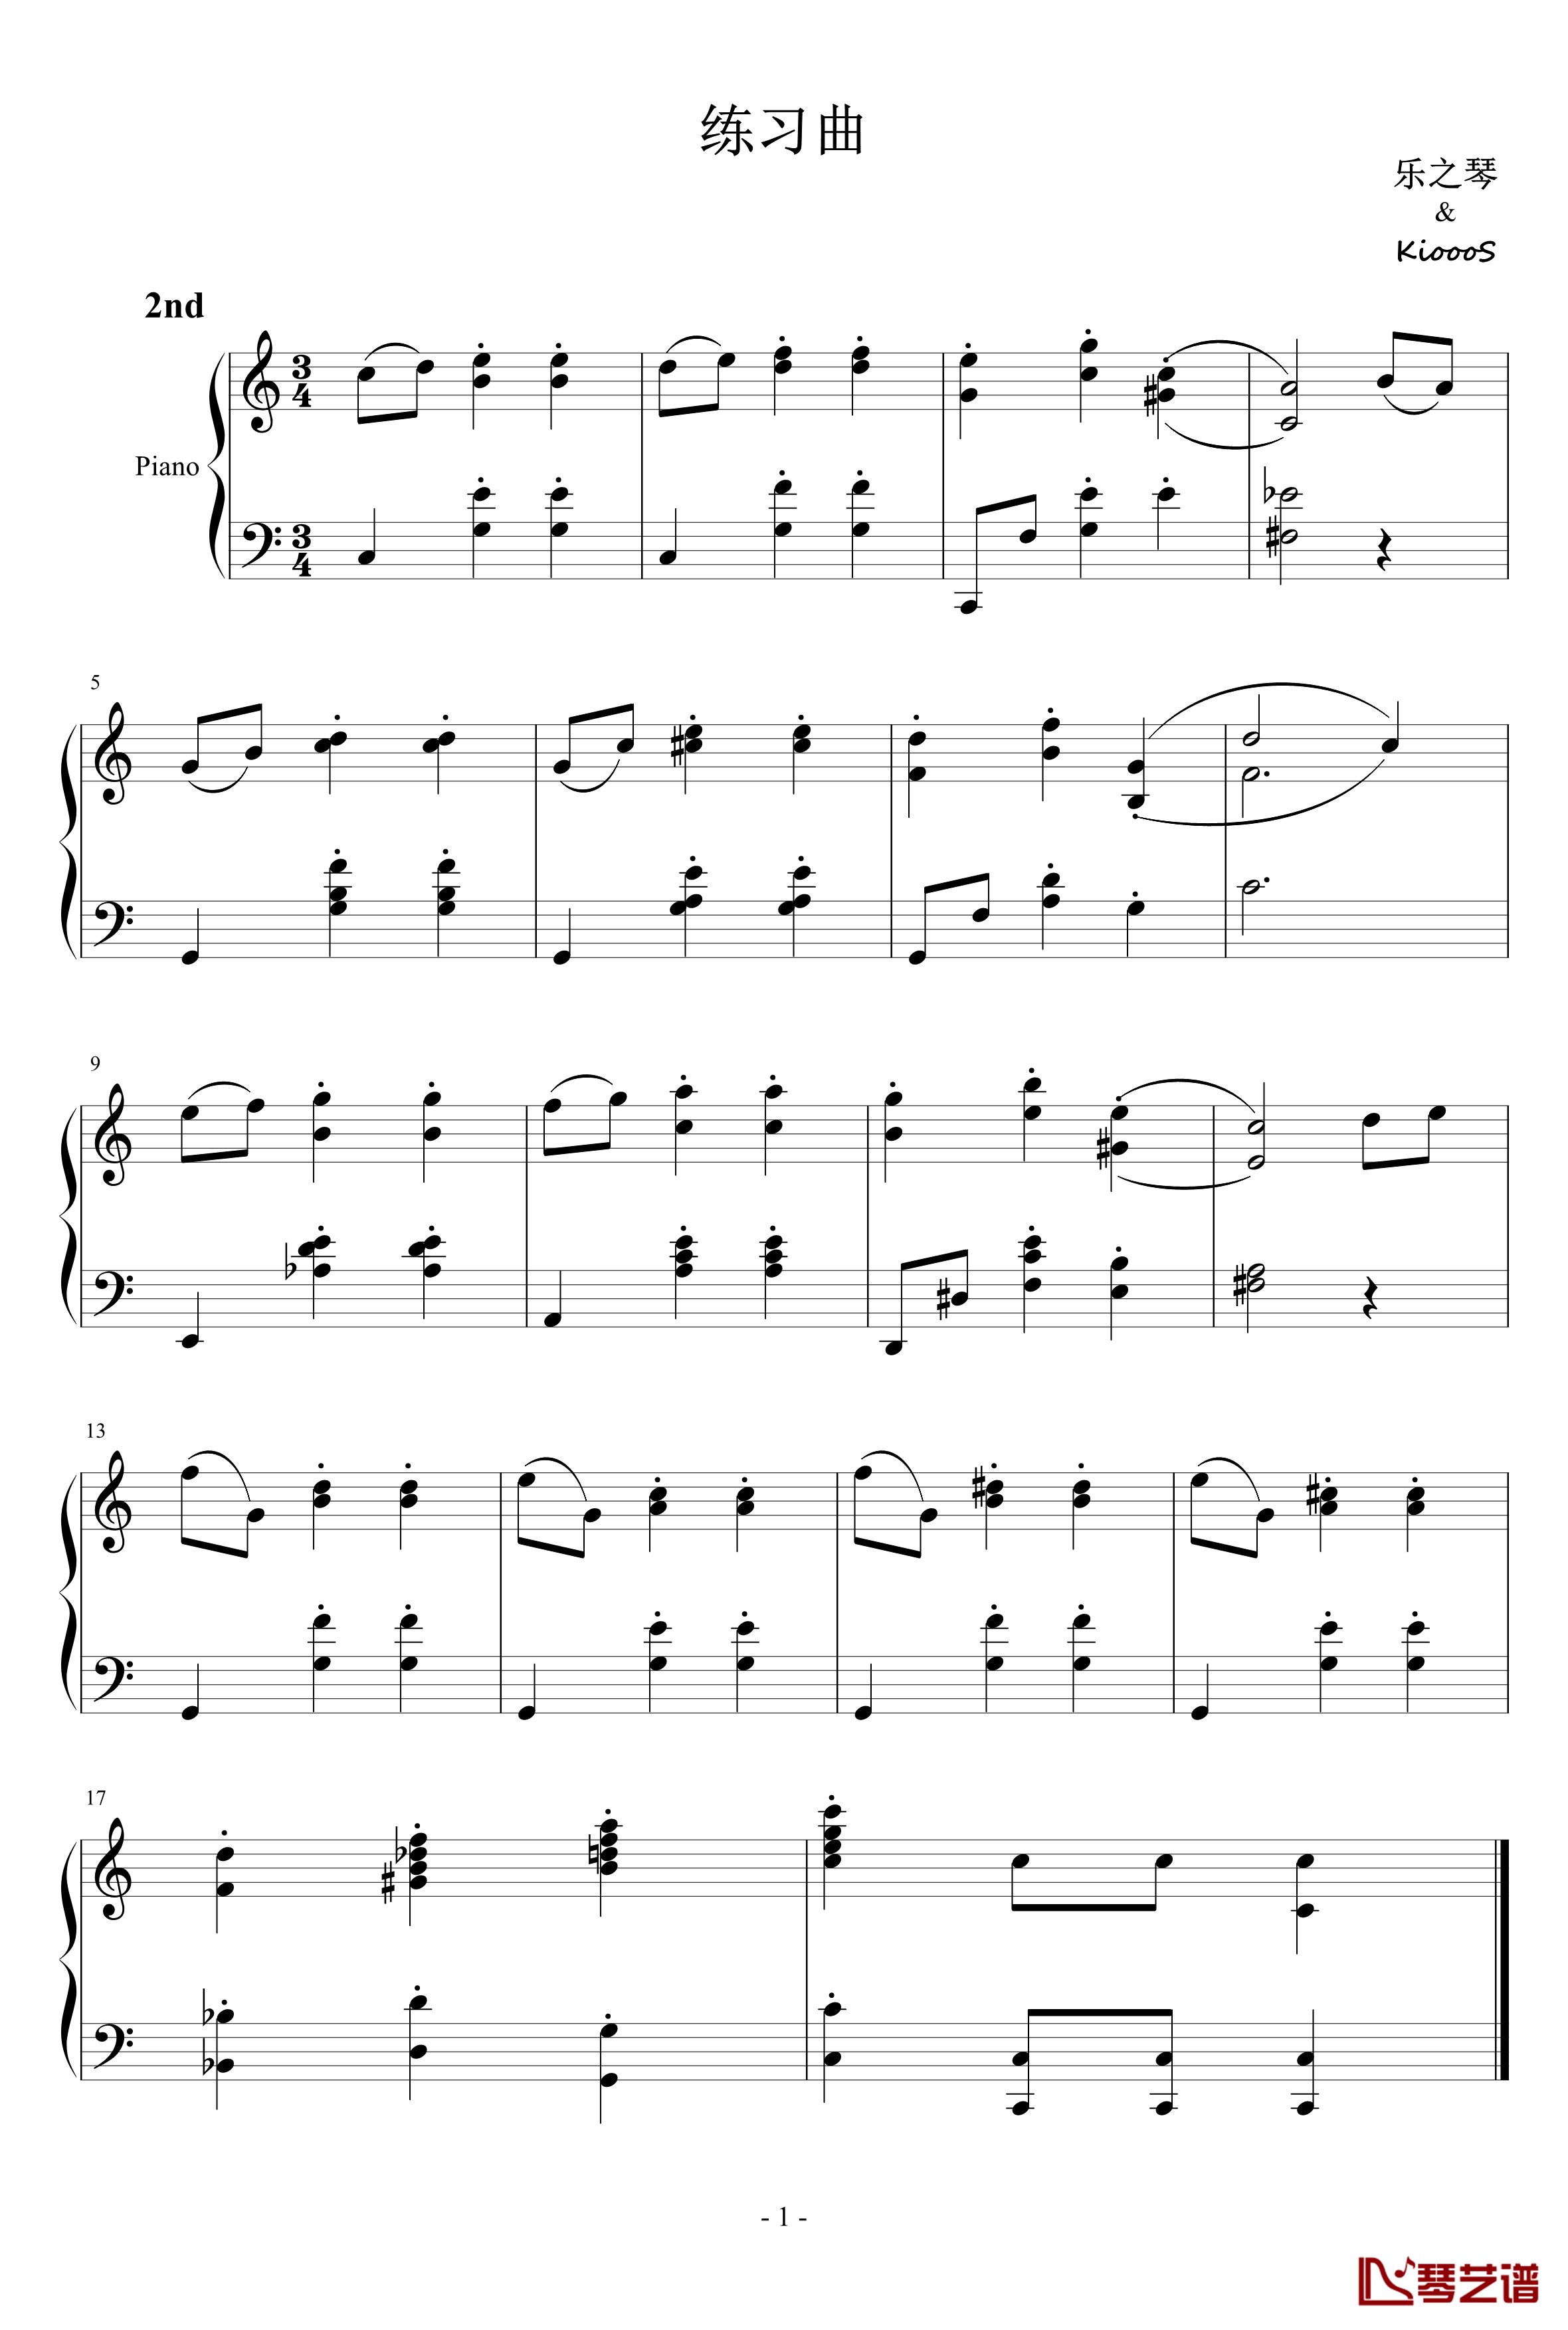 练习曲01钢琴谱-番外-KioooS-乐之琴